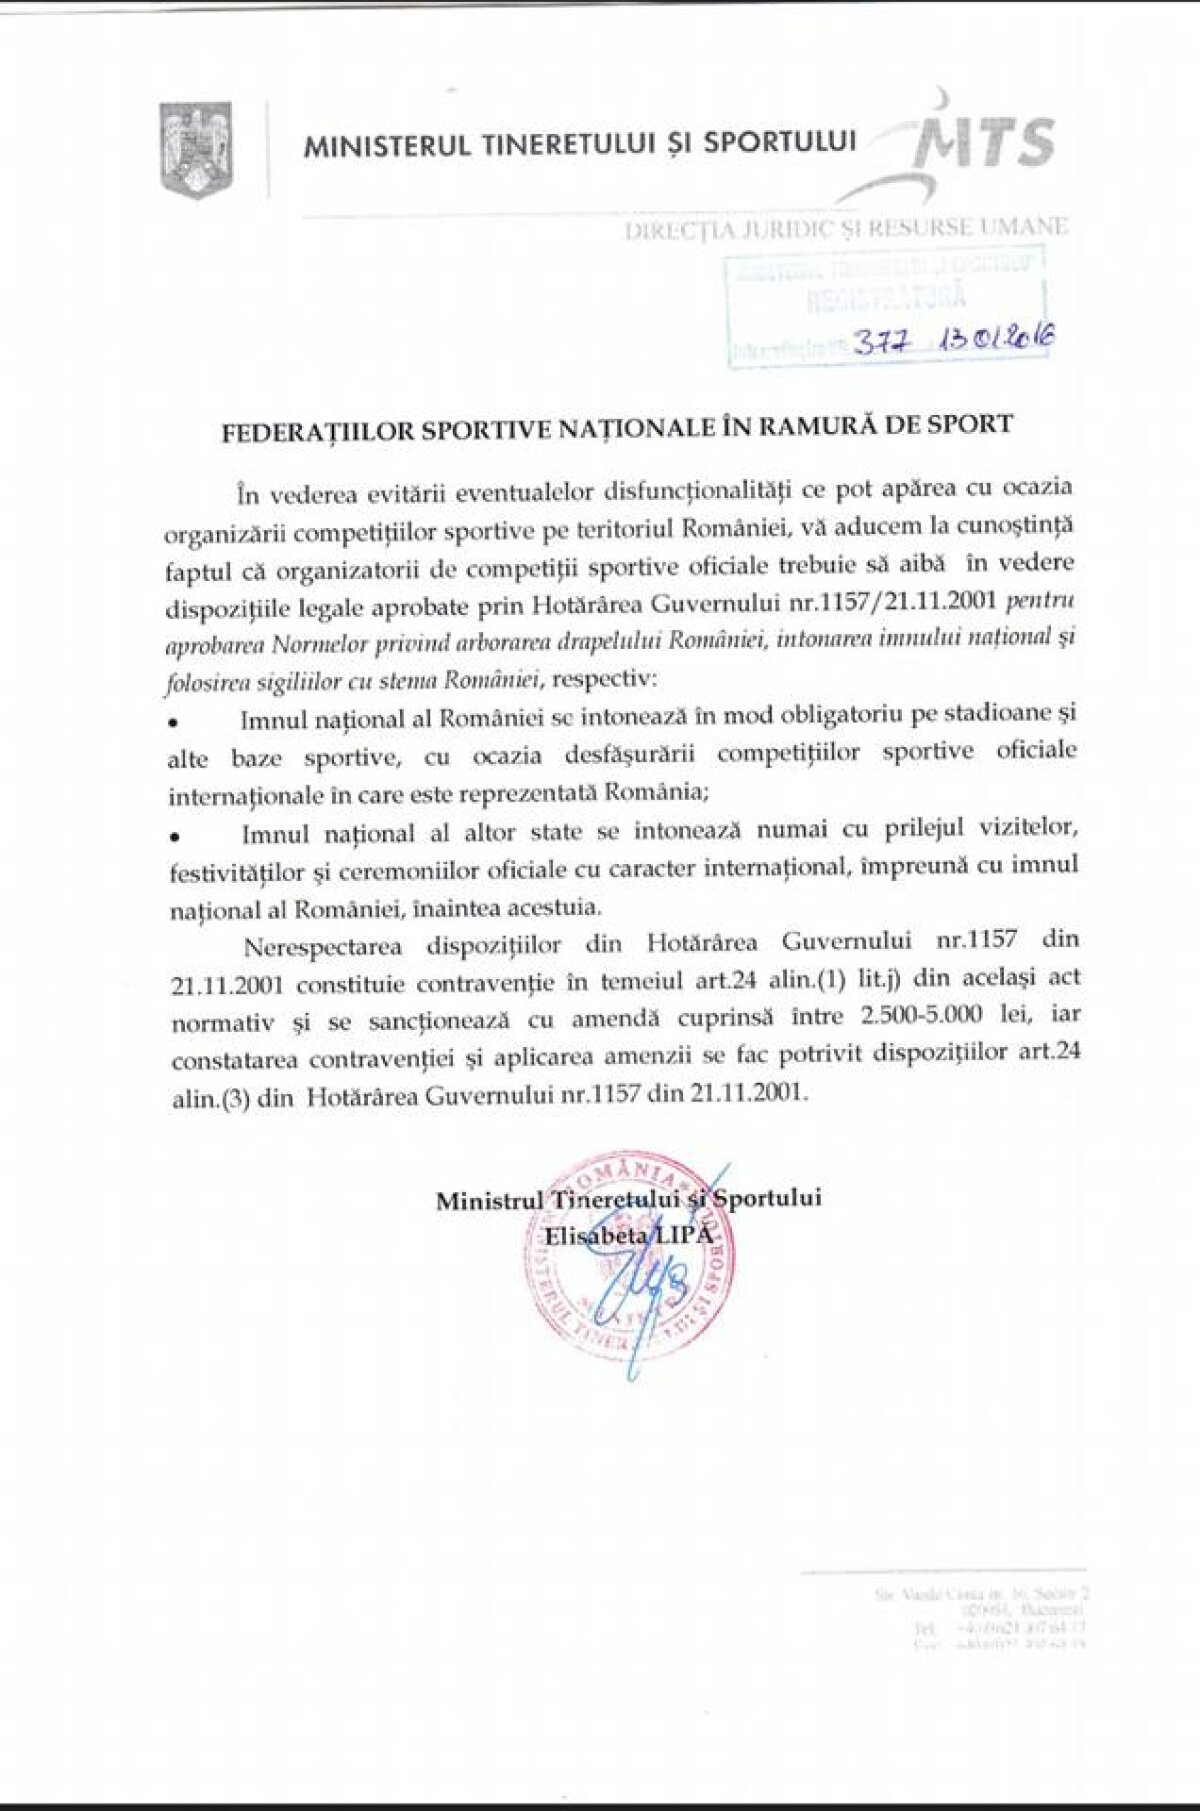 ”Deșteaptă-te, române!” nu poate fi oprit! Interpretarea halucinantă a legilor de către Lipă a dus la interzicerea imnului național în sportul românesc!